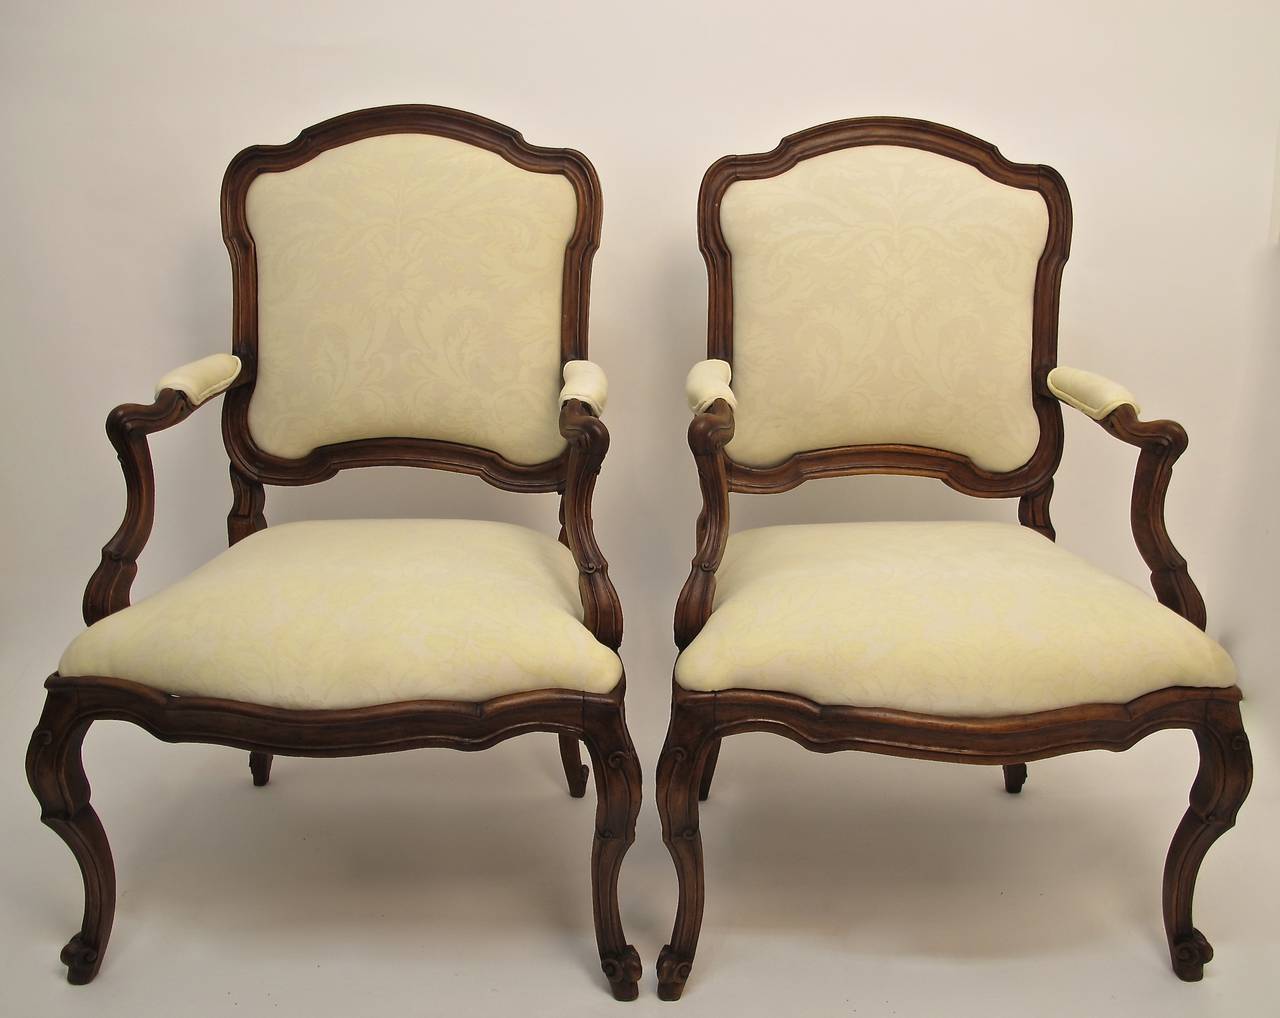 Une paire de fauteuils en noyer sculptés à la main, récemment restaurés et nouvellement tapissés de tissu Fortuny. Les chaises sont robustes et solides, avec un siège de taille généreuse. Italie, période rococo, vers 1780.